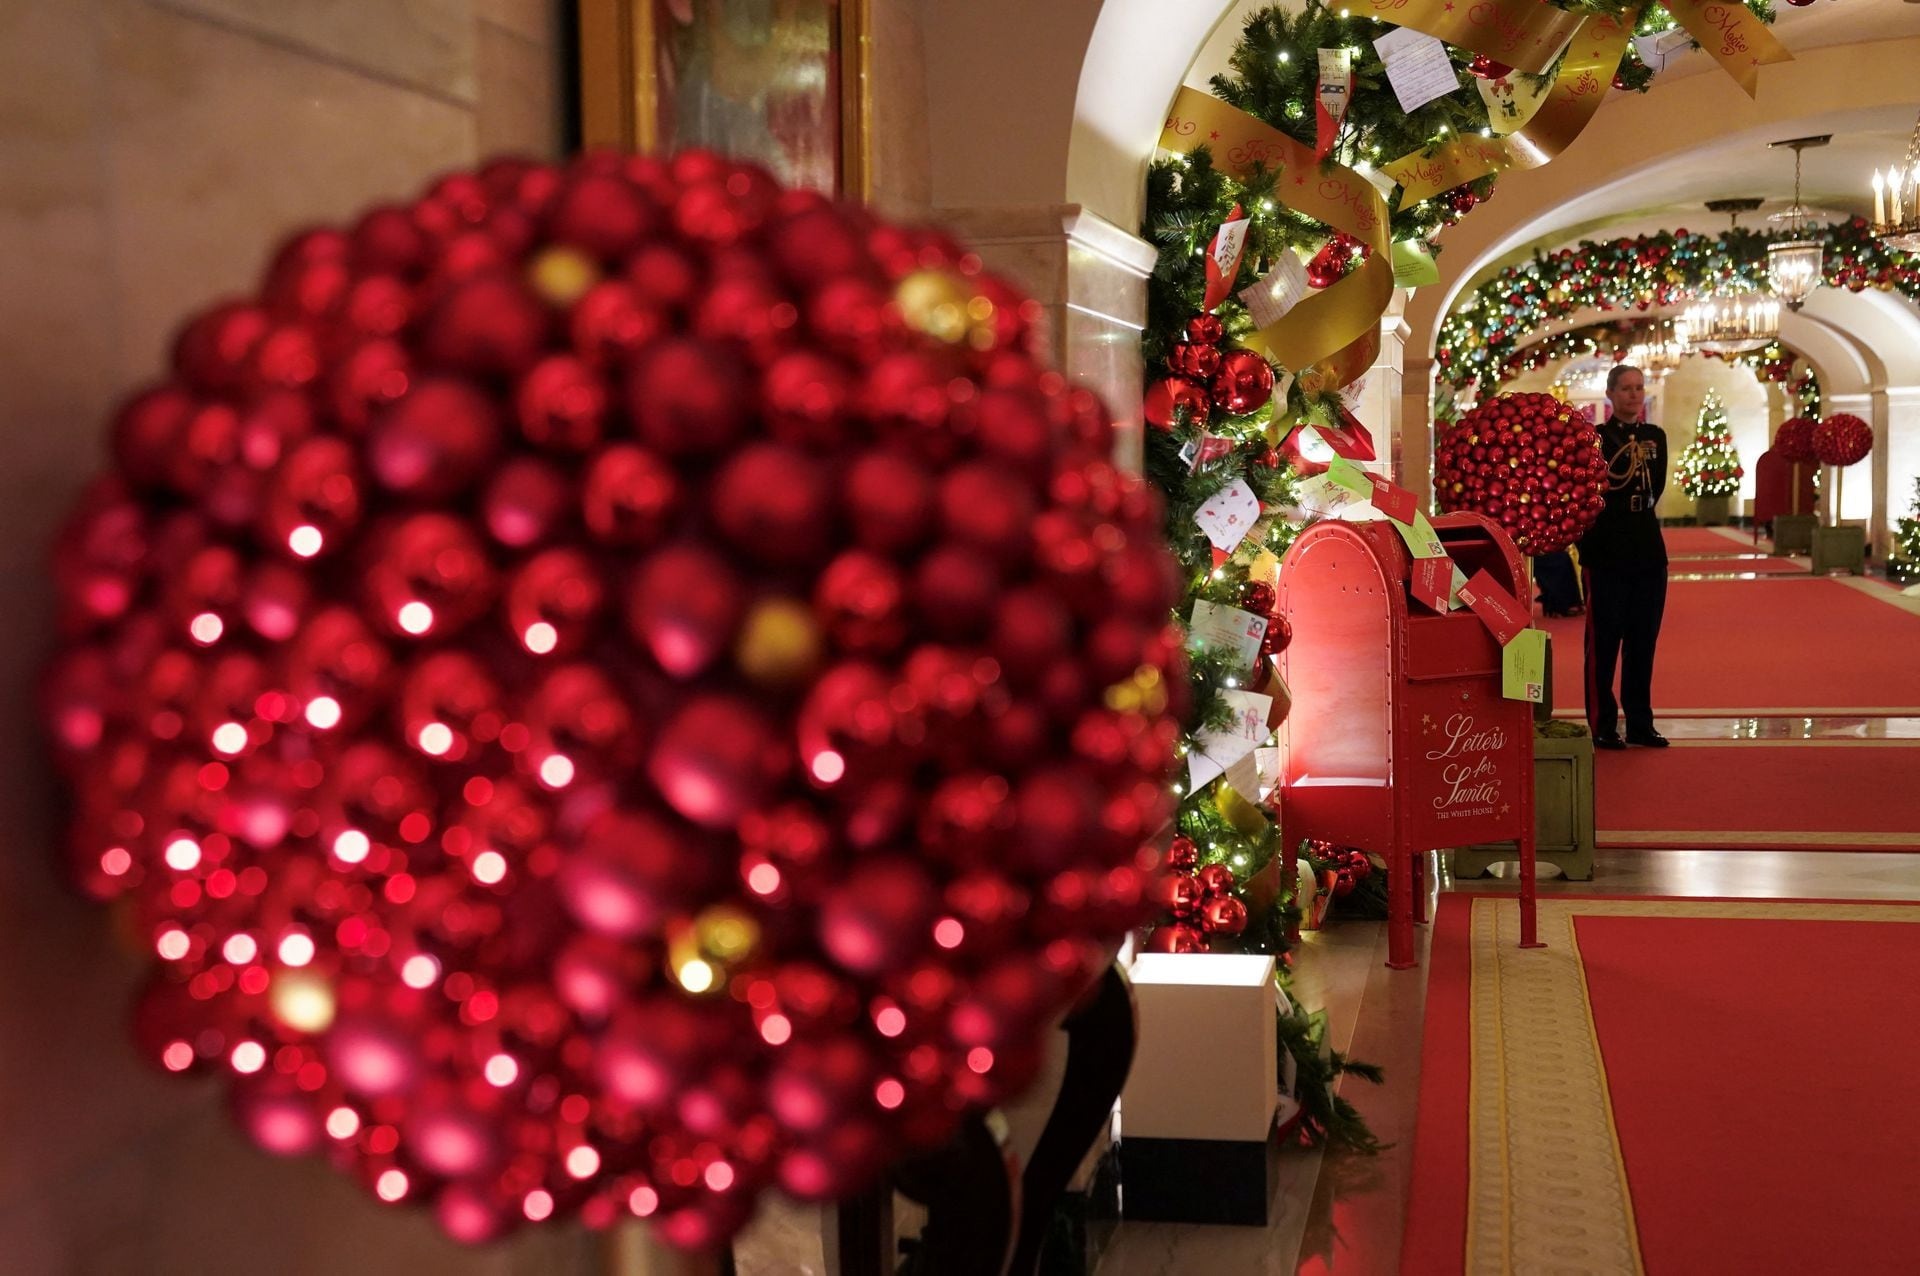 Nhà Trắng lung linh sắc màu đón Giáng sinh với 98 cây thông Noel và 140.000 bóng đèn - Ảnh 9.